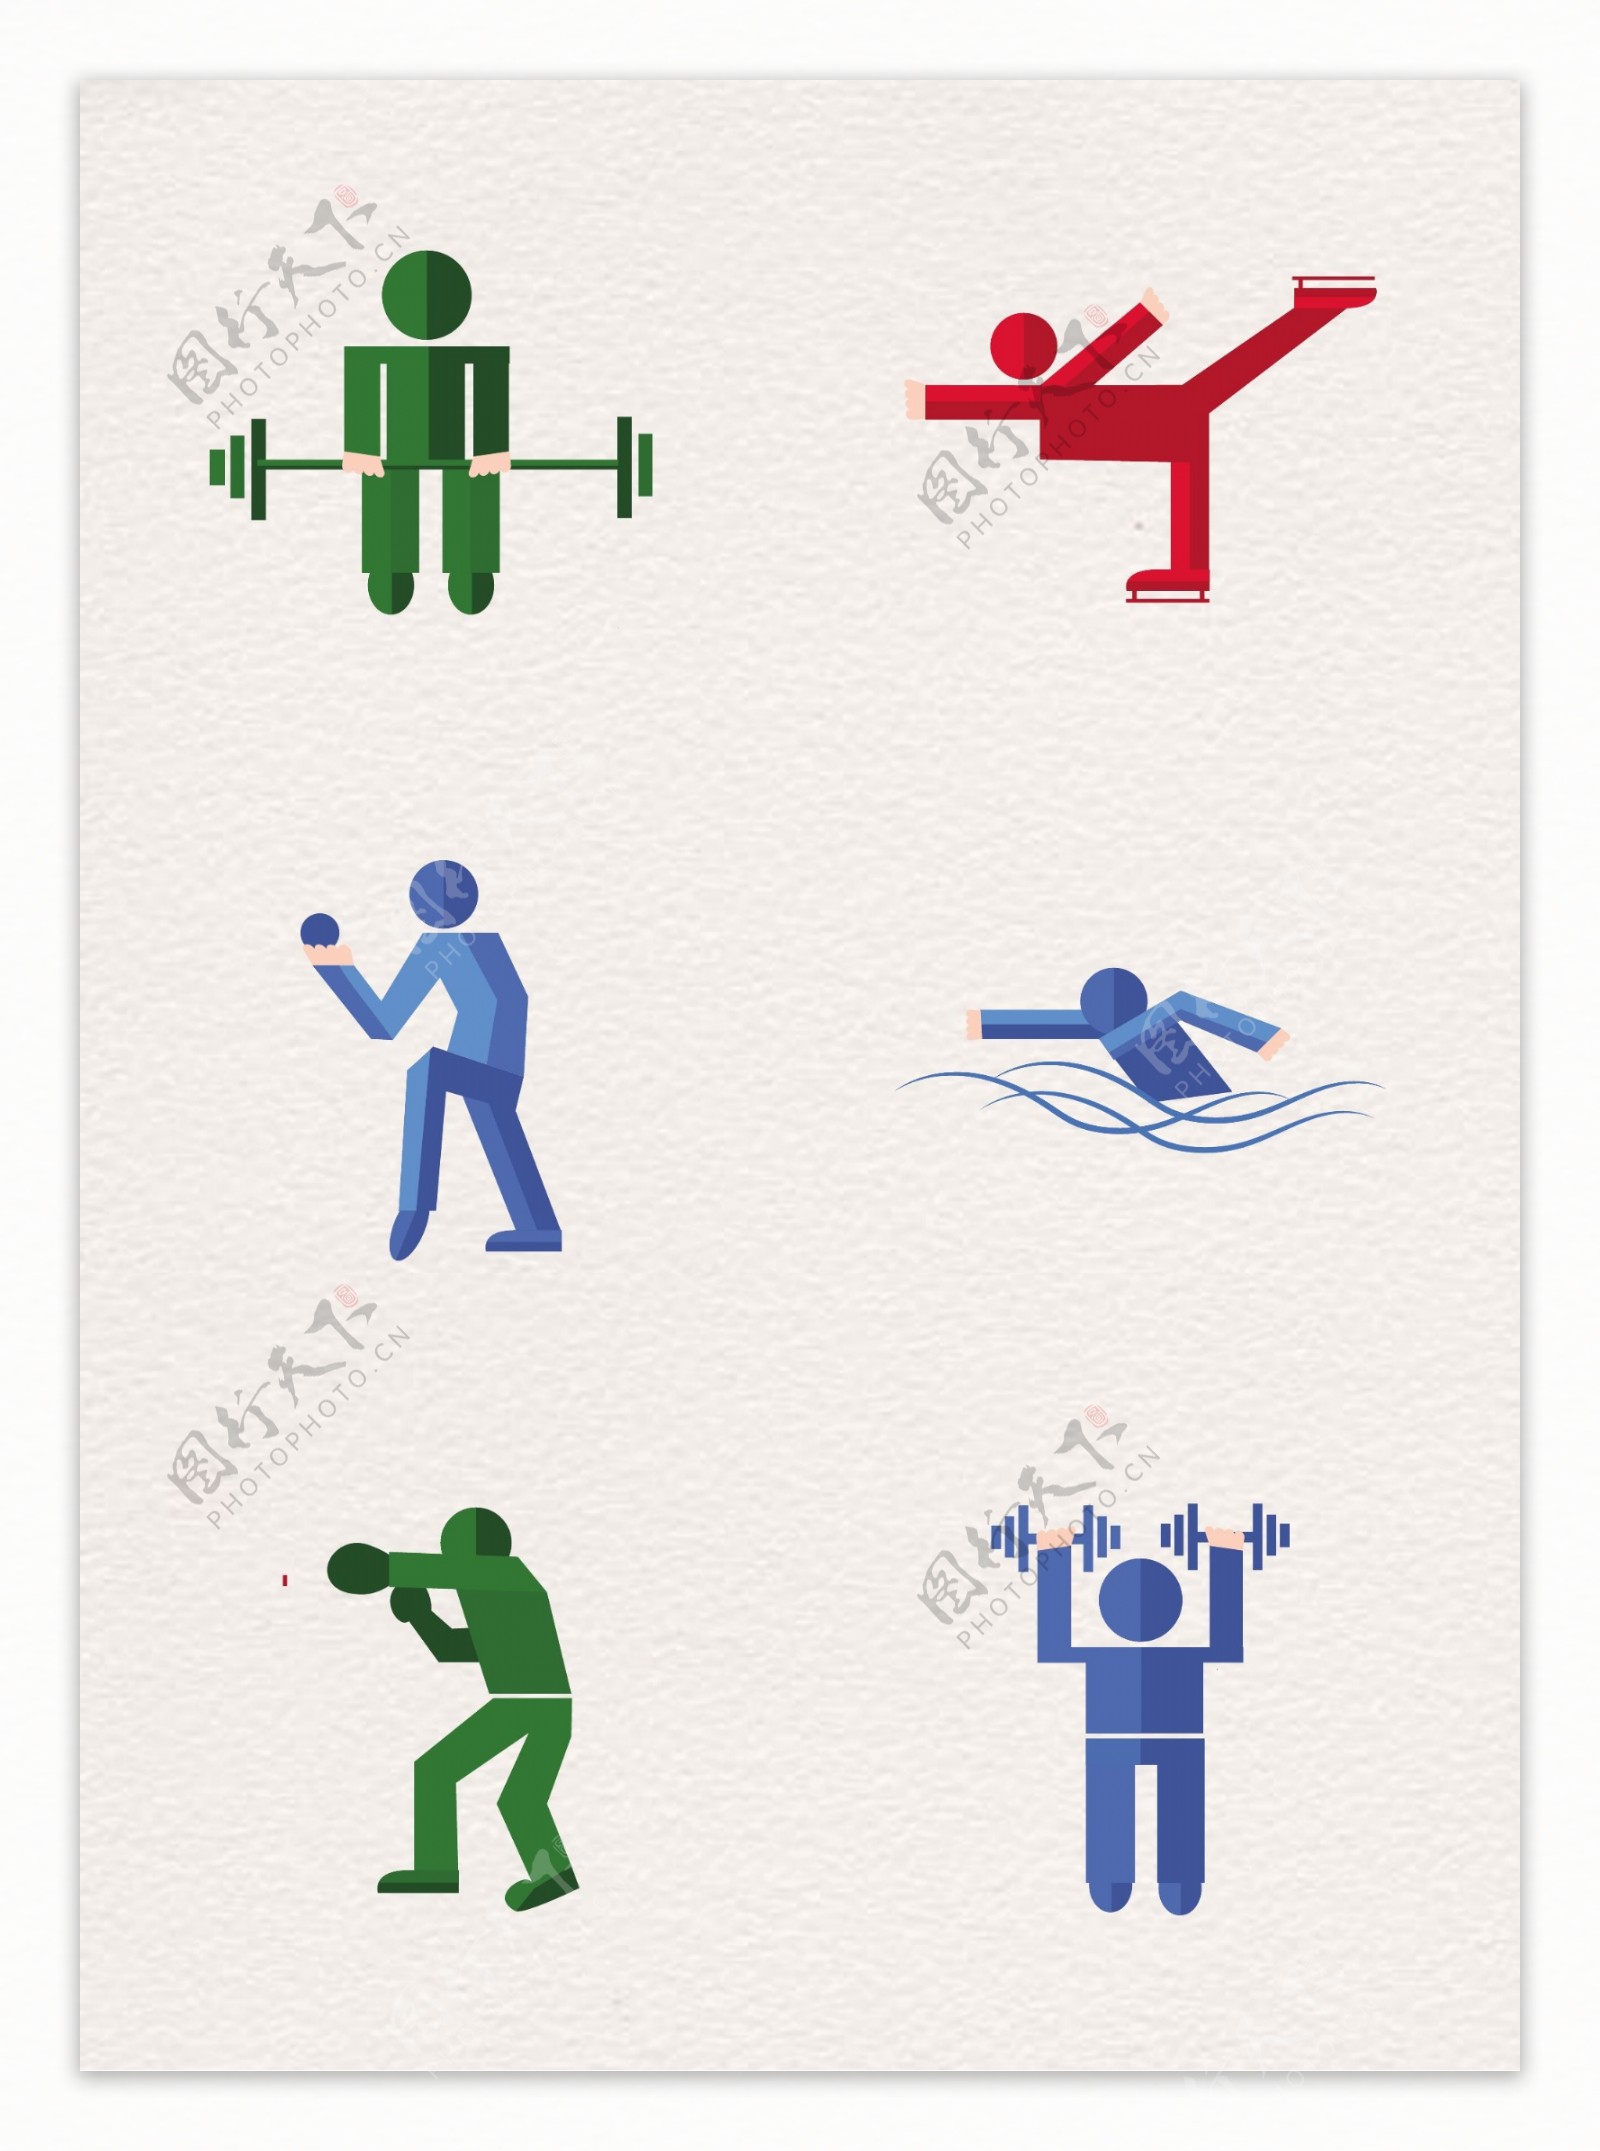 扁平化体育健身小图标素材